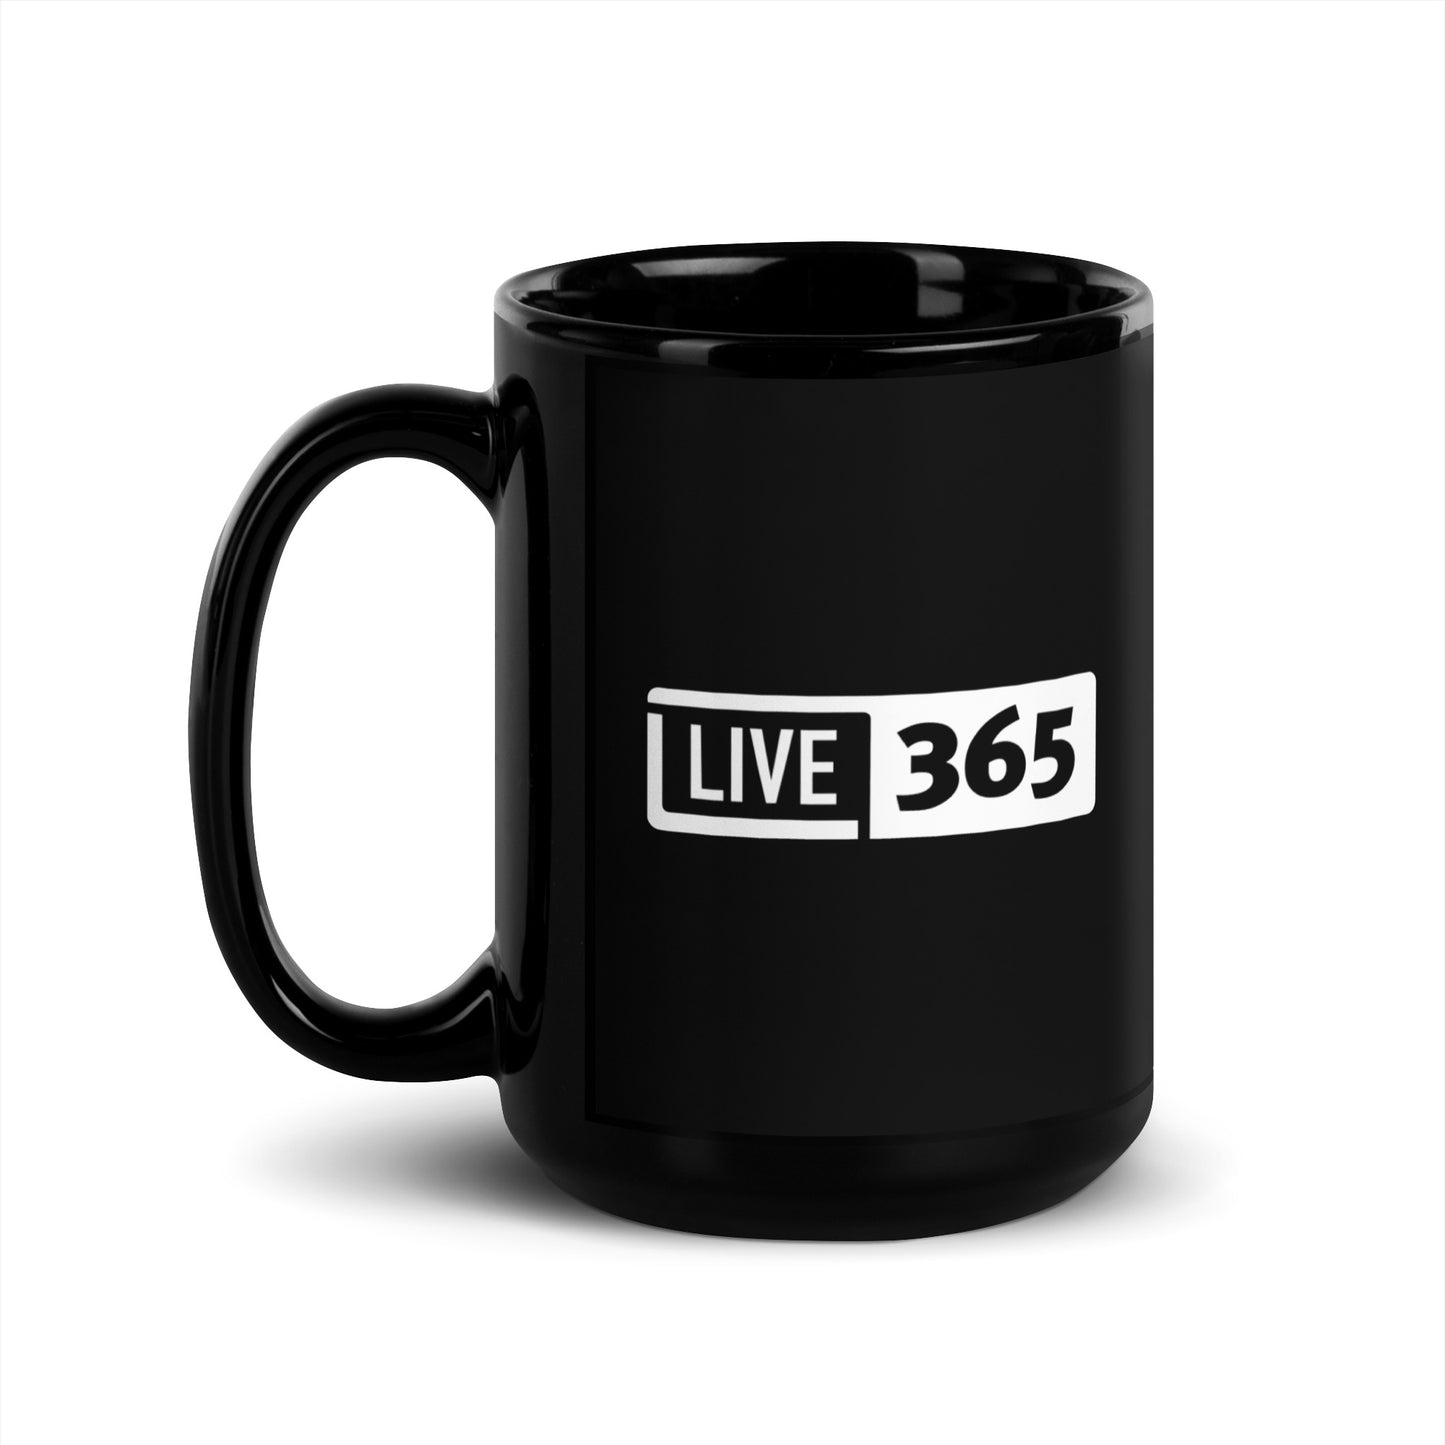 Live365 Black Mug